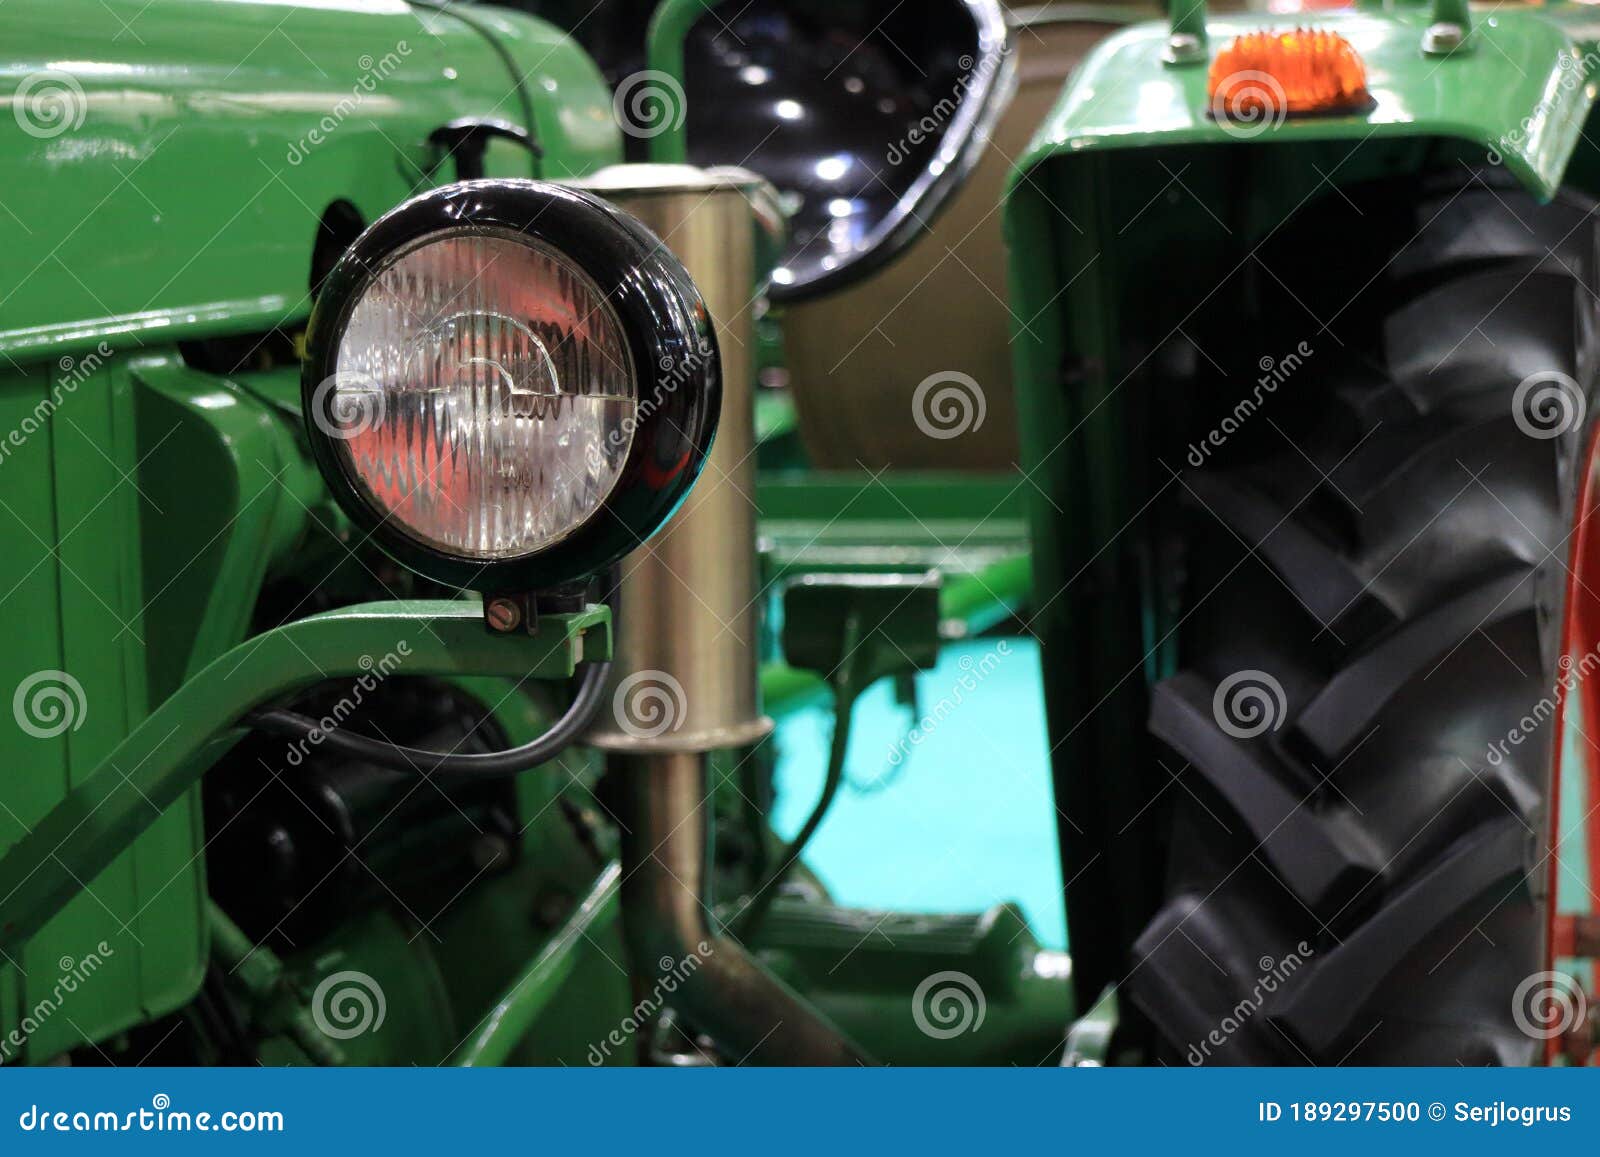 Imagen de tractor foto de archivo. Imagen de maquinaria -